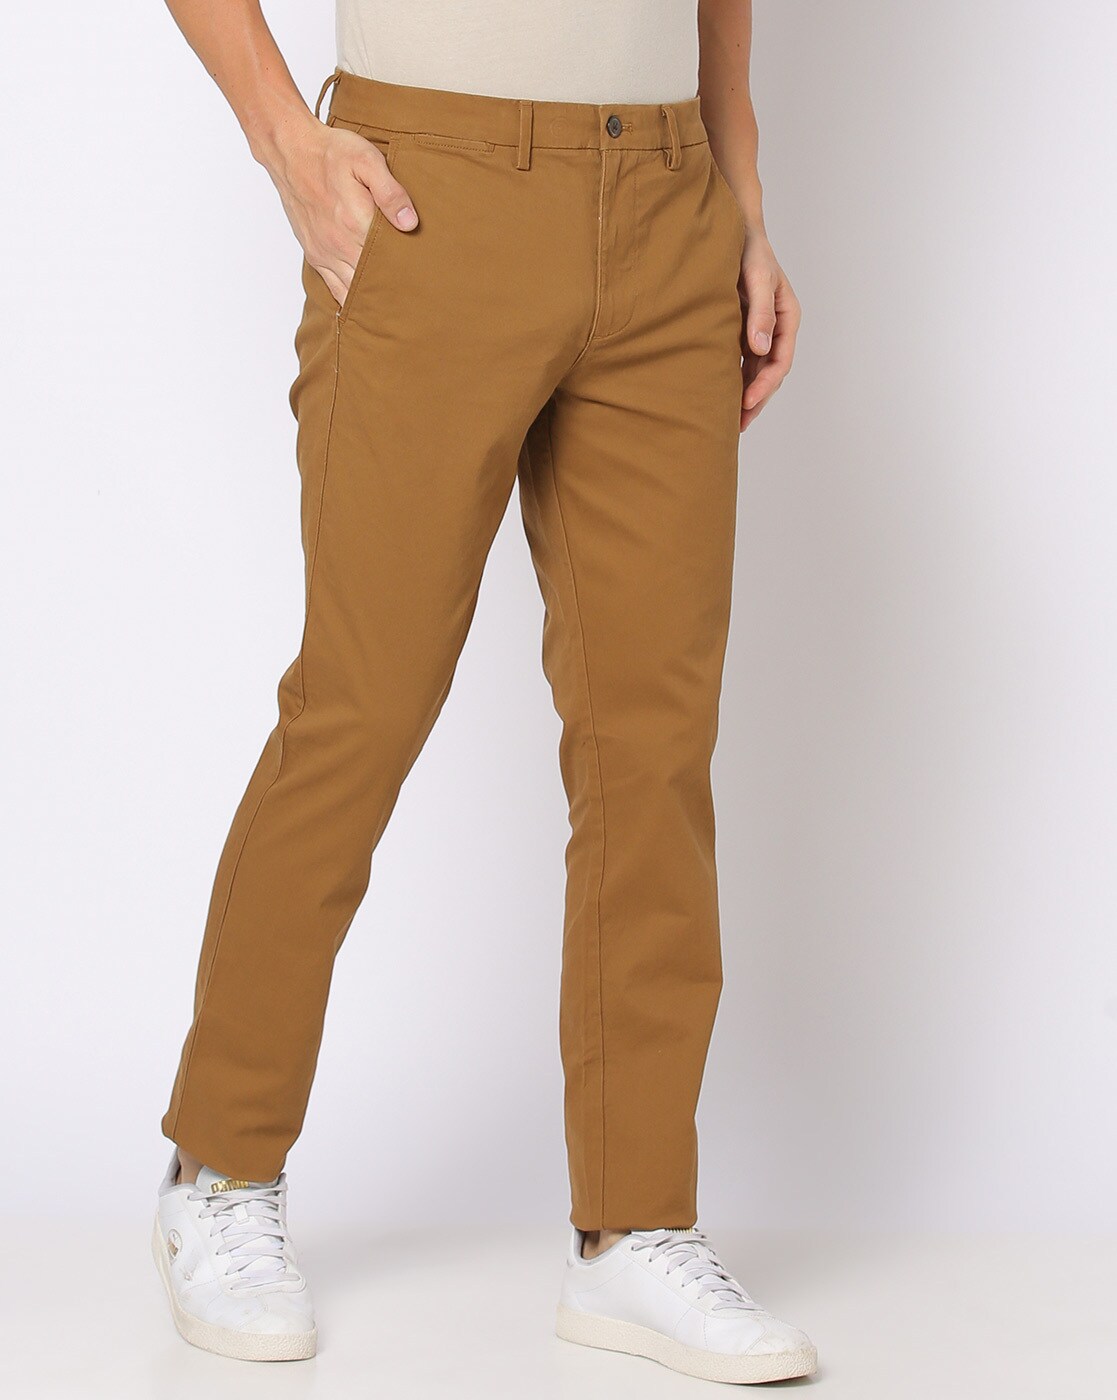 Gap Straight Leg Lightweight Dress Pants | Lightweight dress, Dress pants,  Khaki chinos